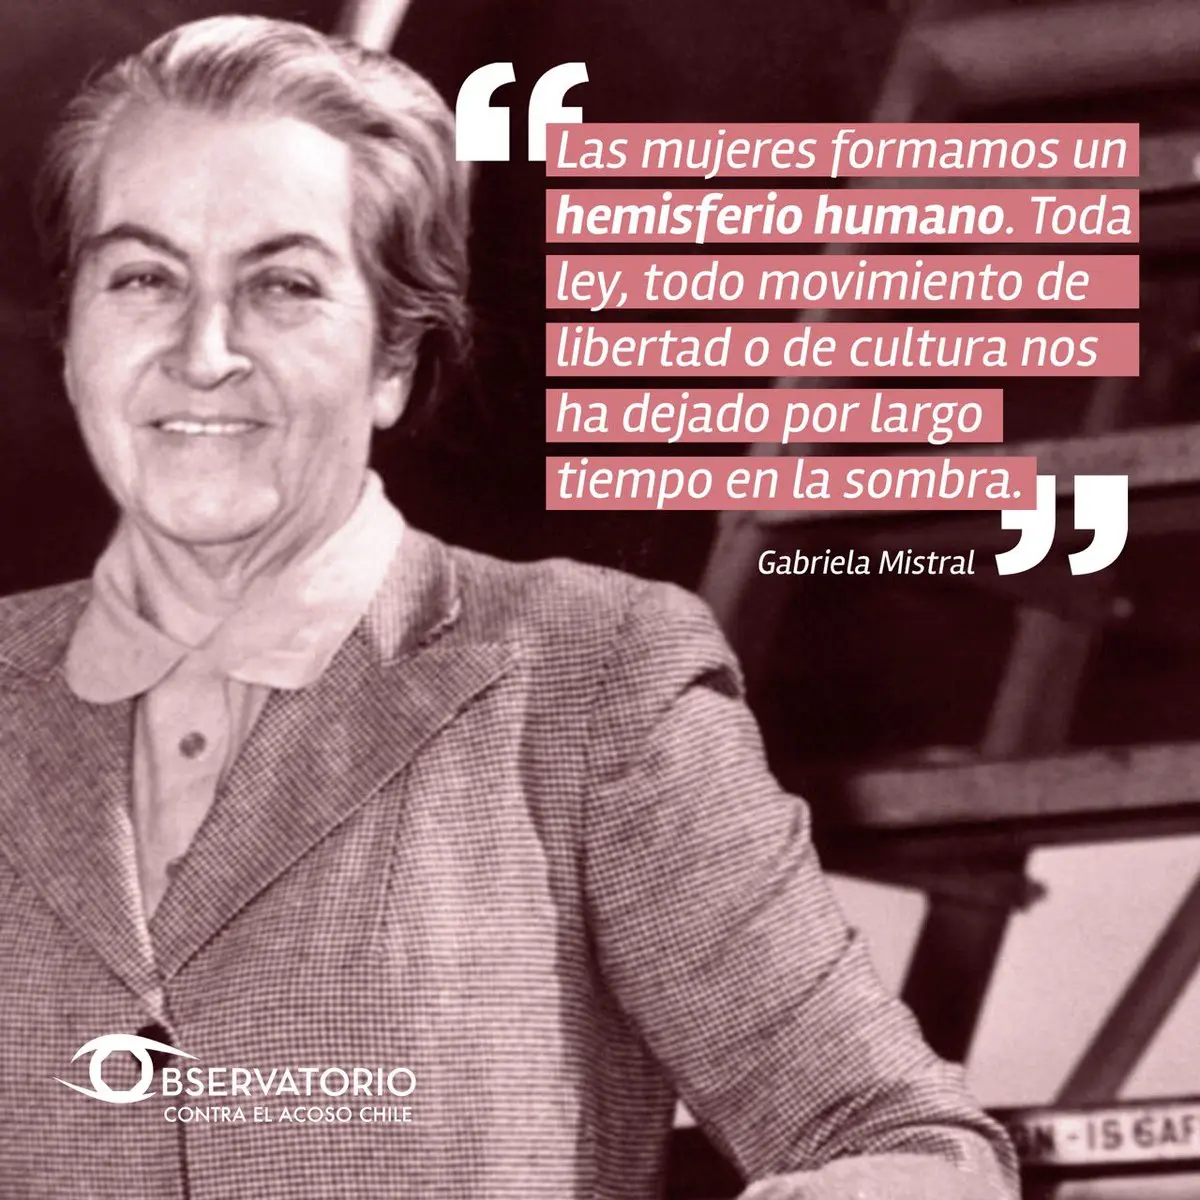 gabriela mistral poemas feministas - Qué hizo Gabriela Mistral por el feminismo